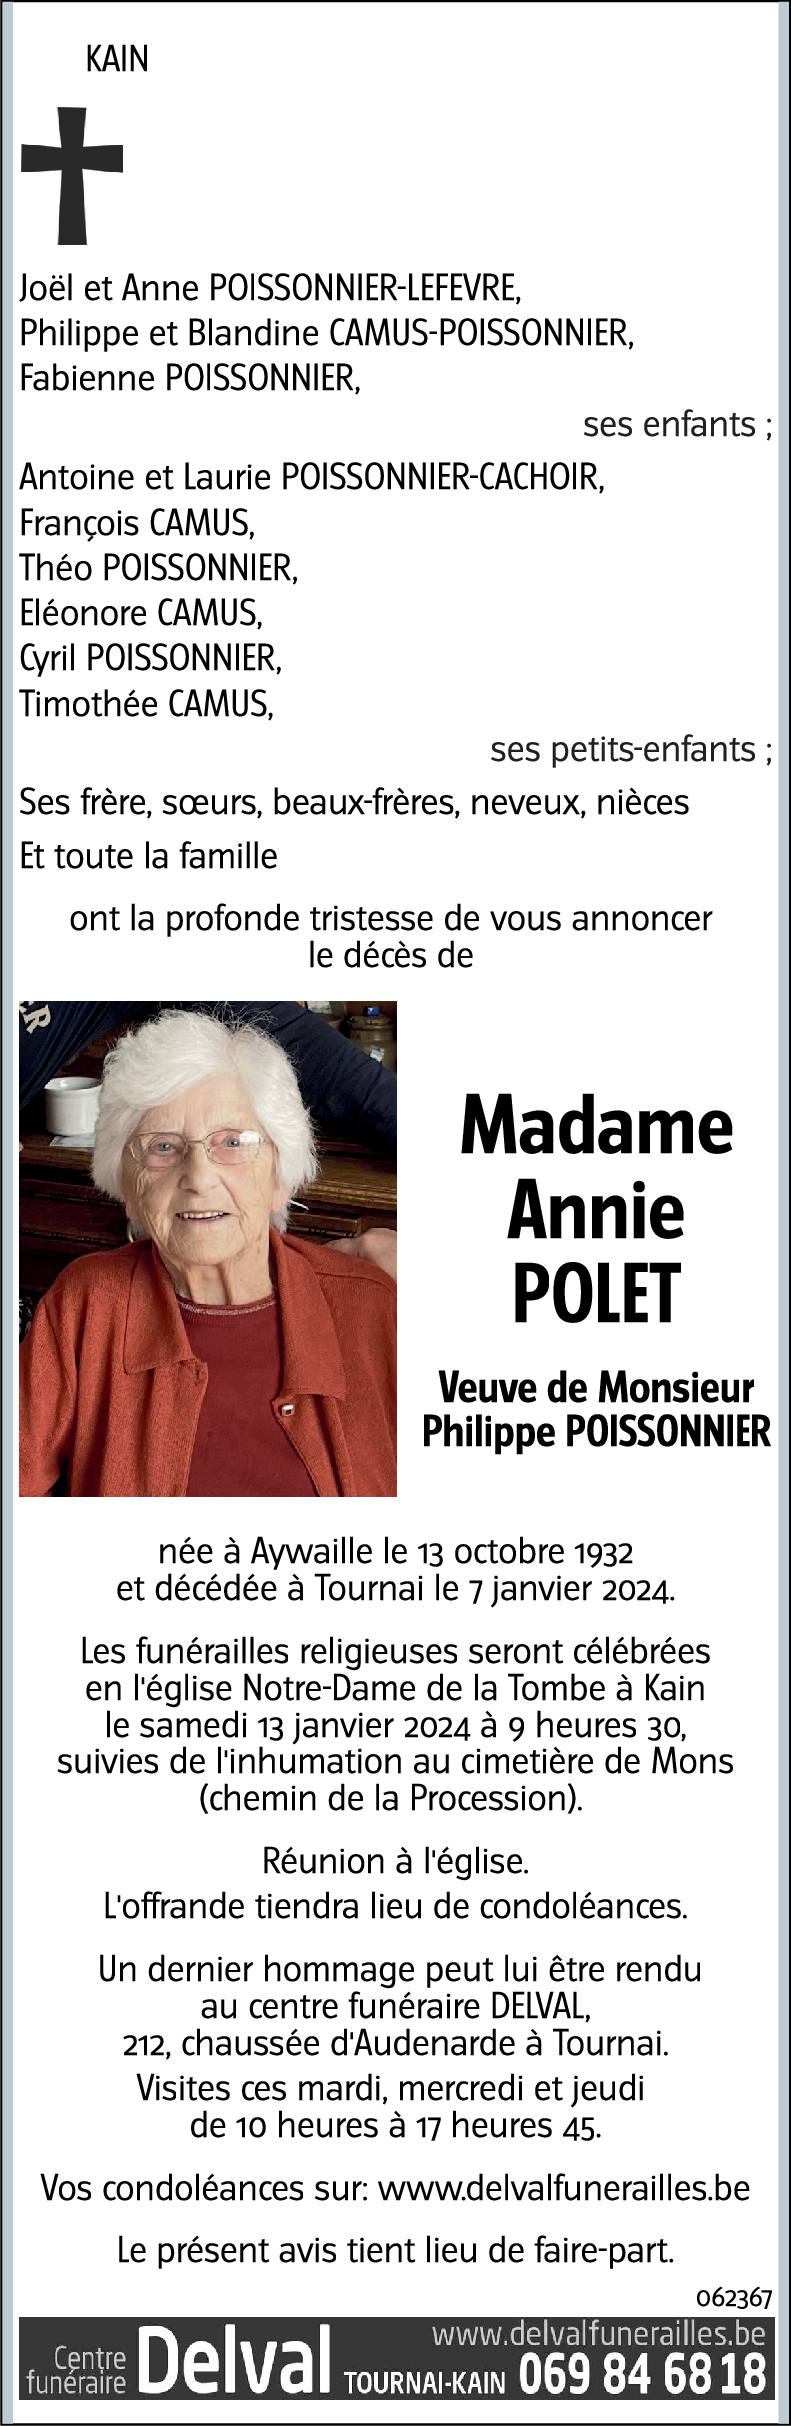 Annie POLET